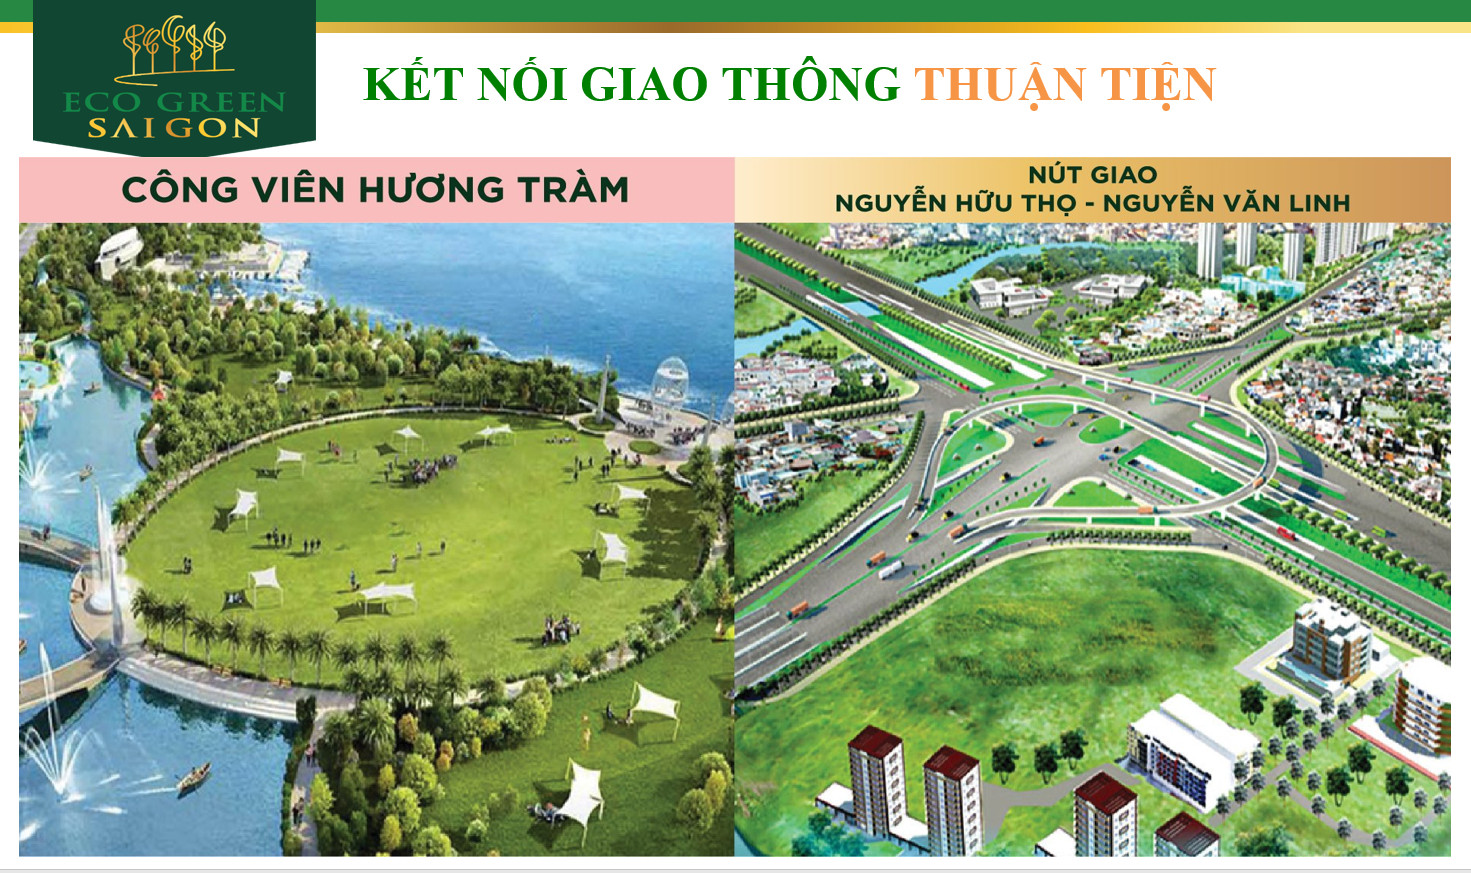 Nút giao thông  Vòng xoay, Cầu vượt Nguyễn Hữu Thọ - Nguyễn văn Linh đang thi công.